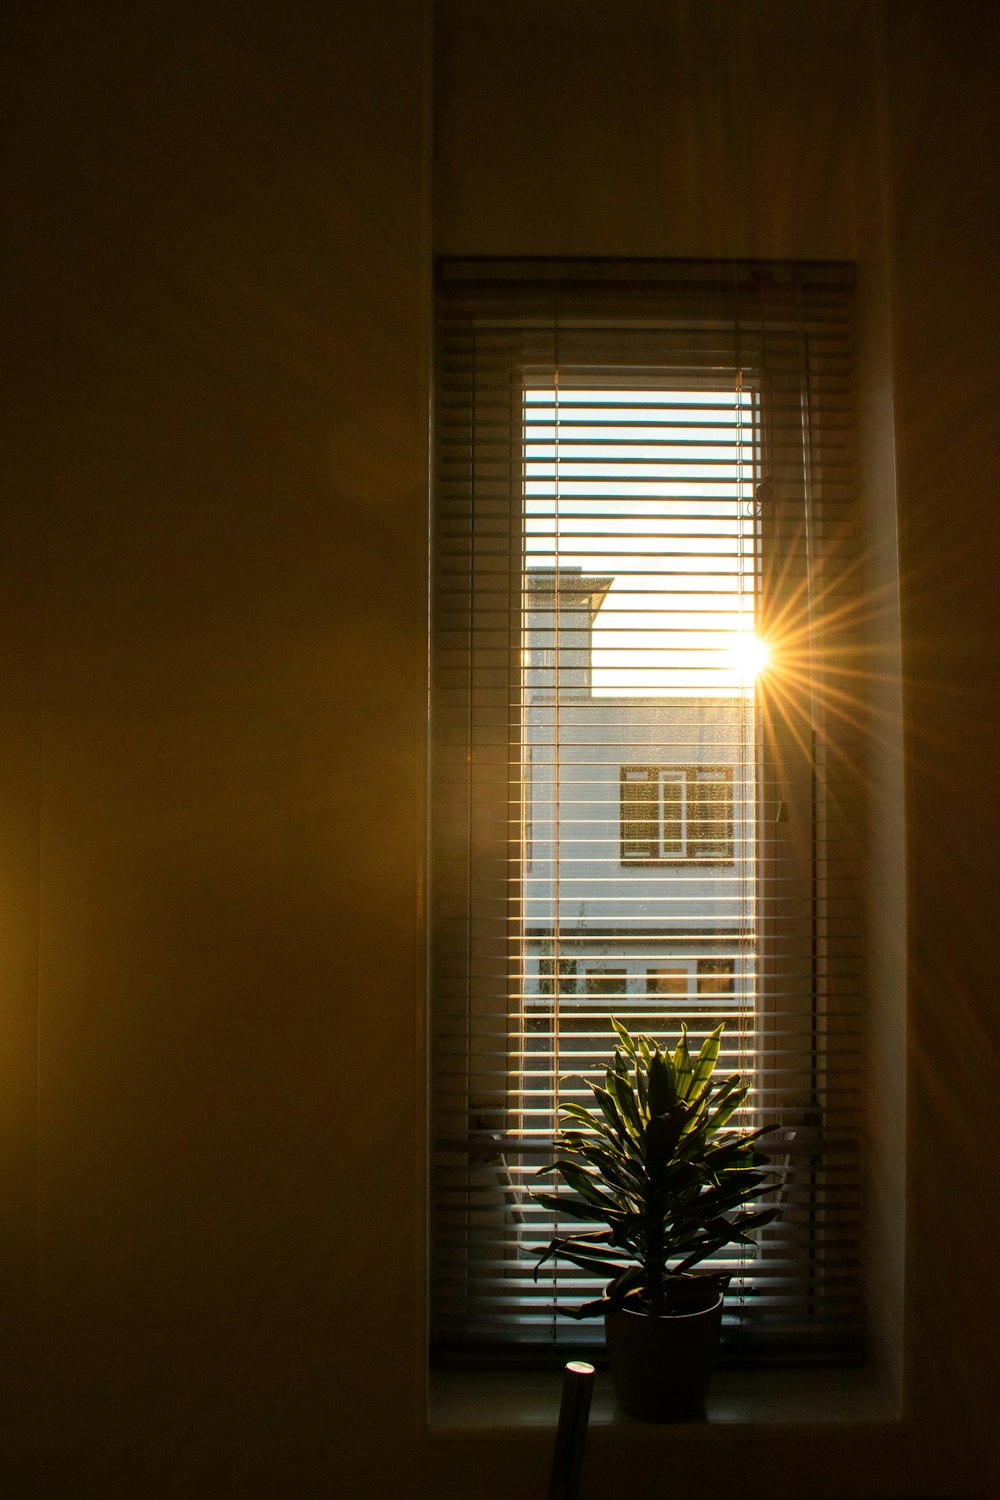 鉢植えの植物を前にした窓から差し込む太陽